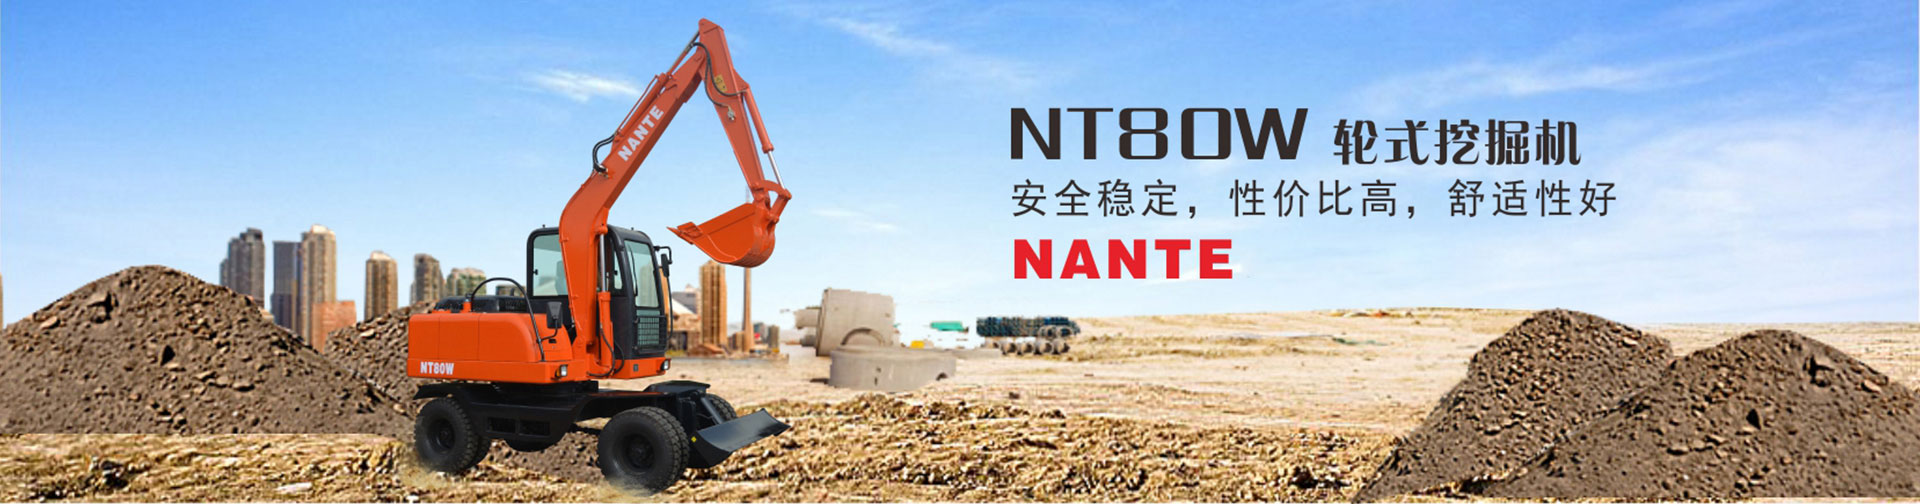 南特NT80W輪式挖掘機